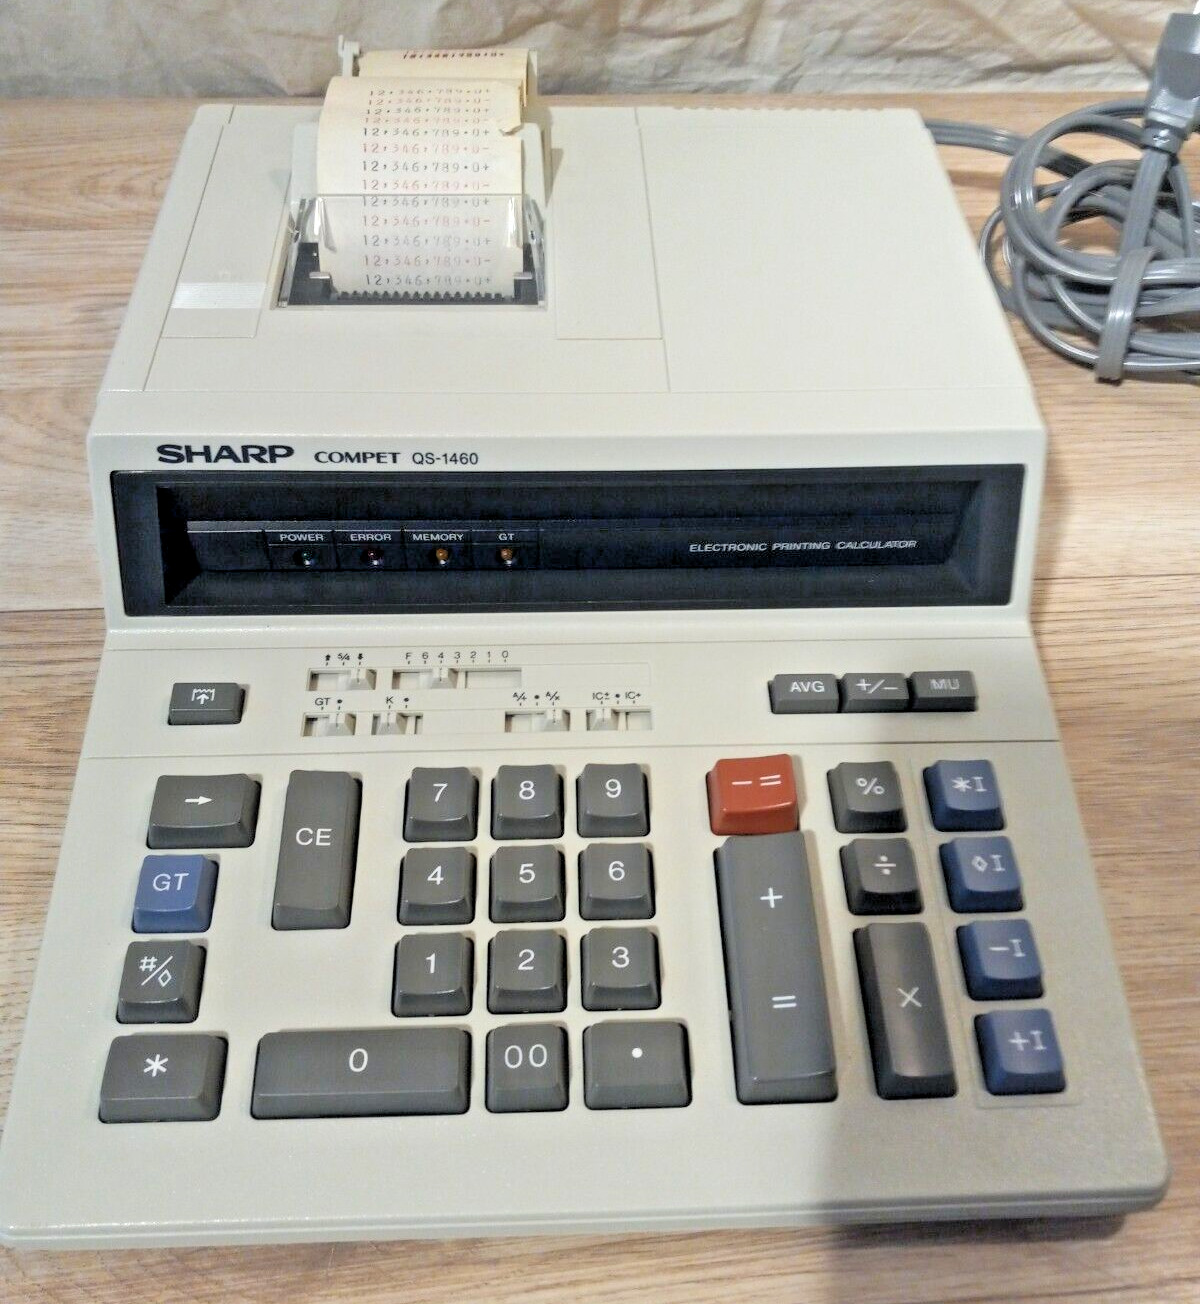 Sharp Compet QS-1460 Adding Machine Vintage